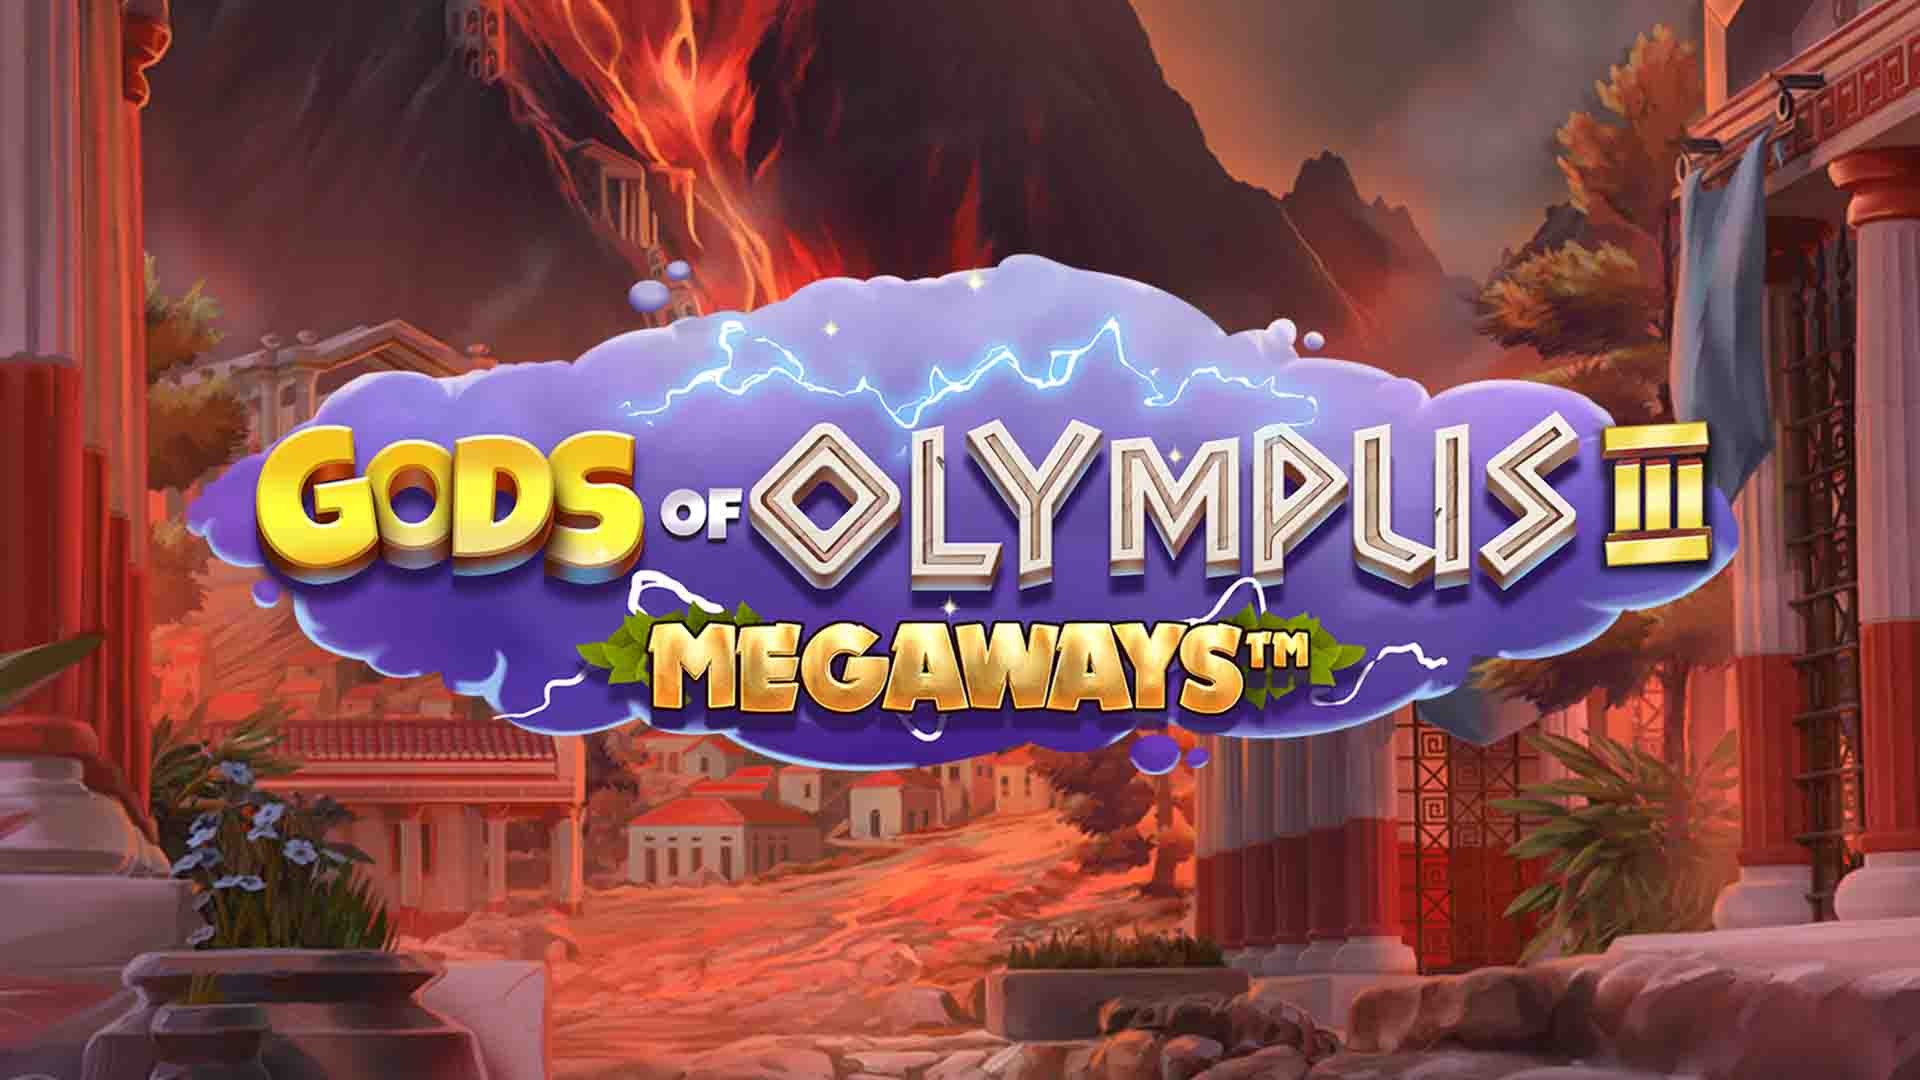 Gods of Olympus III MEGAWAYS